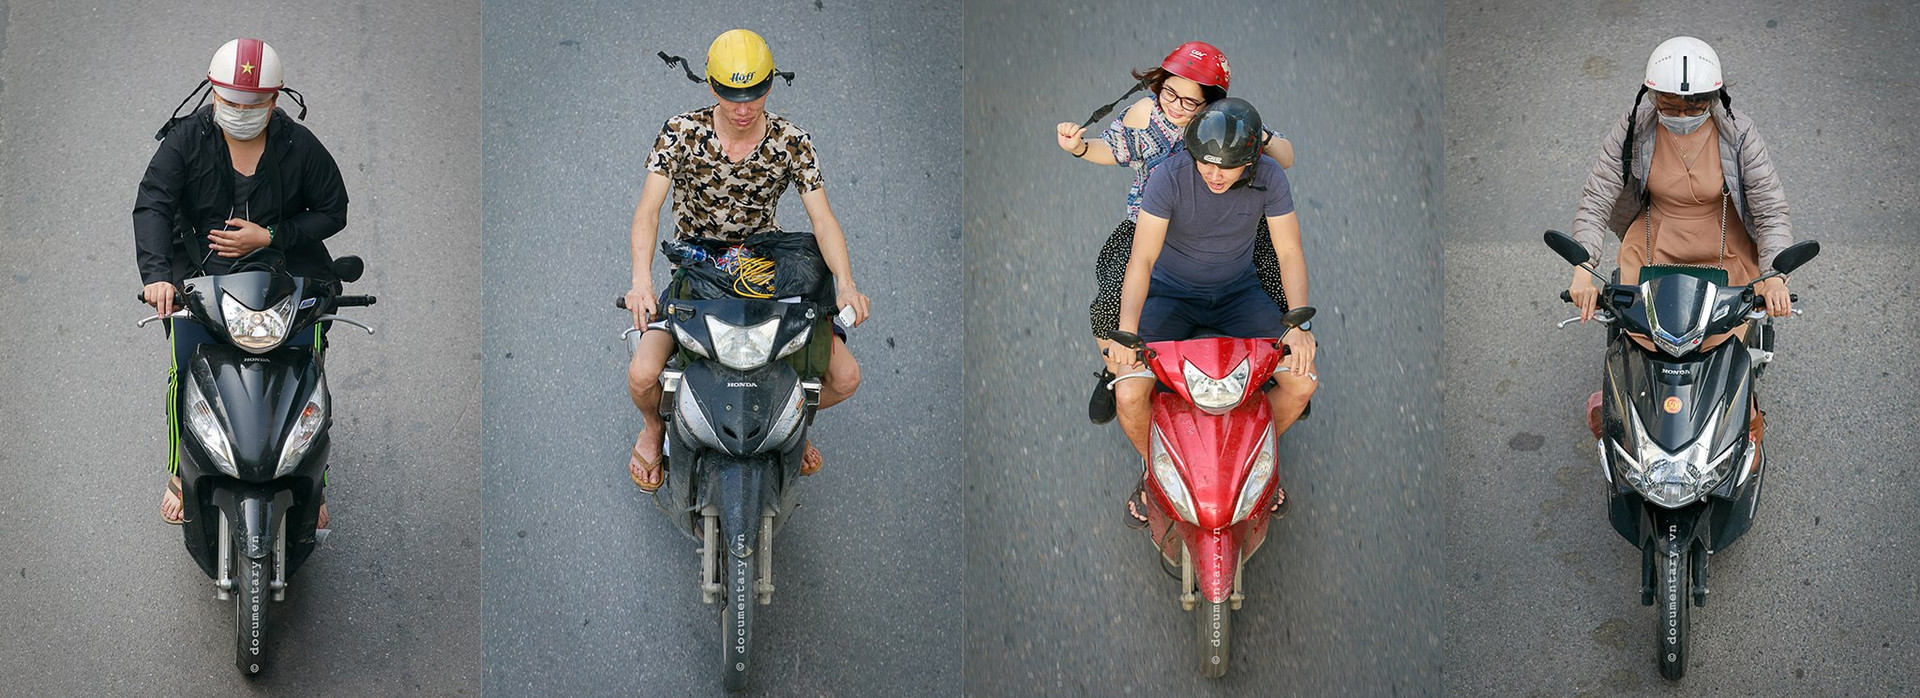 Góc nhìn thú vị về giao thông Hà Nội qua loạt ảnh “Những bộ tứ siêu đẳng”